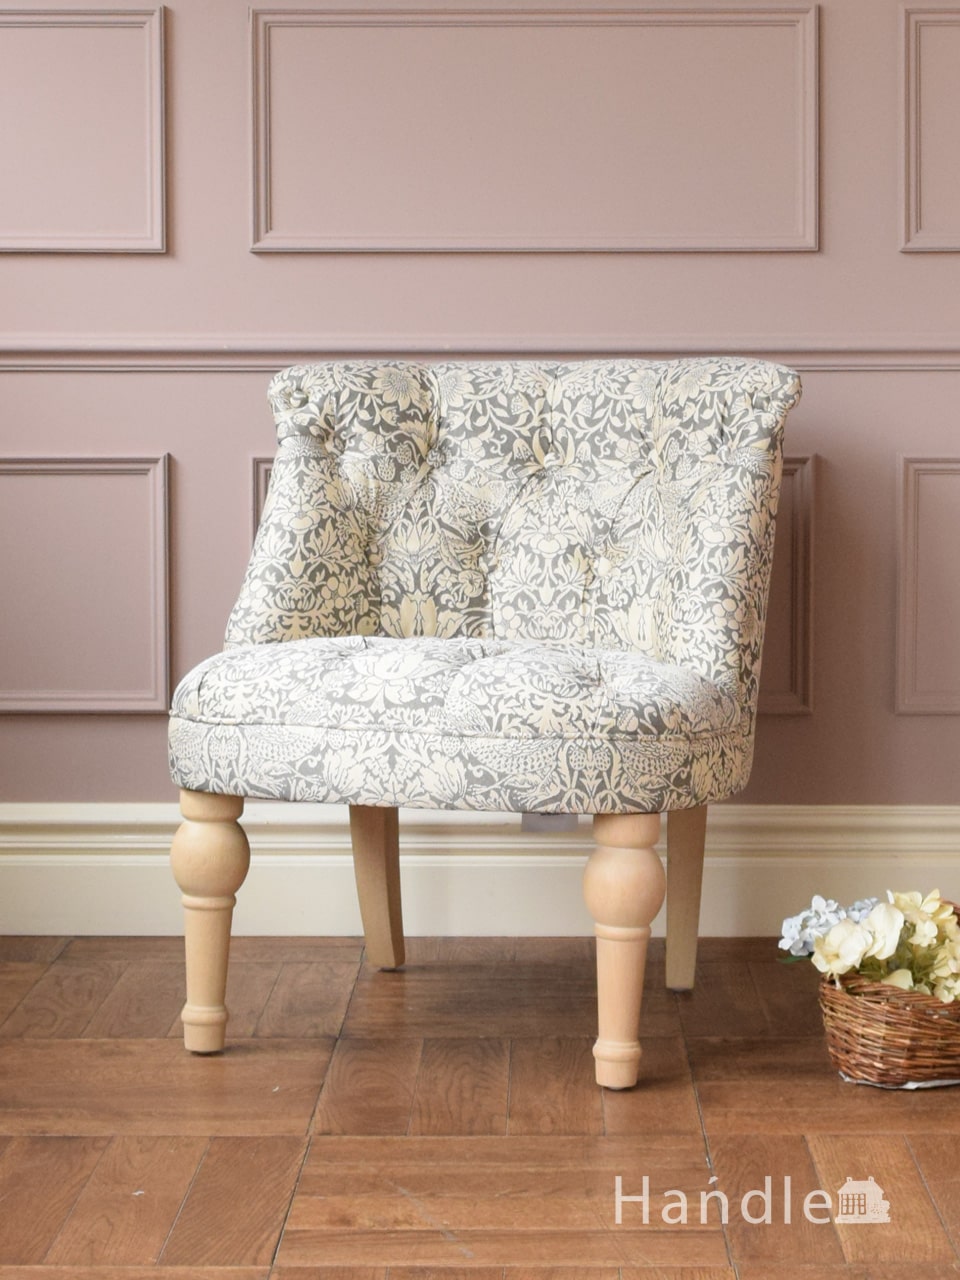 ウィリアムモリス風のおしゃれな椅子、華やかなデザインのアームチェア